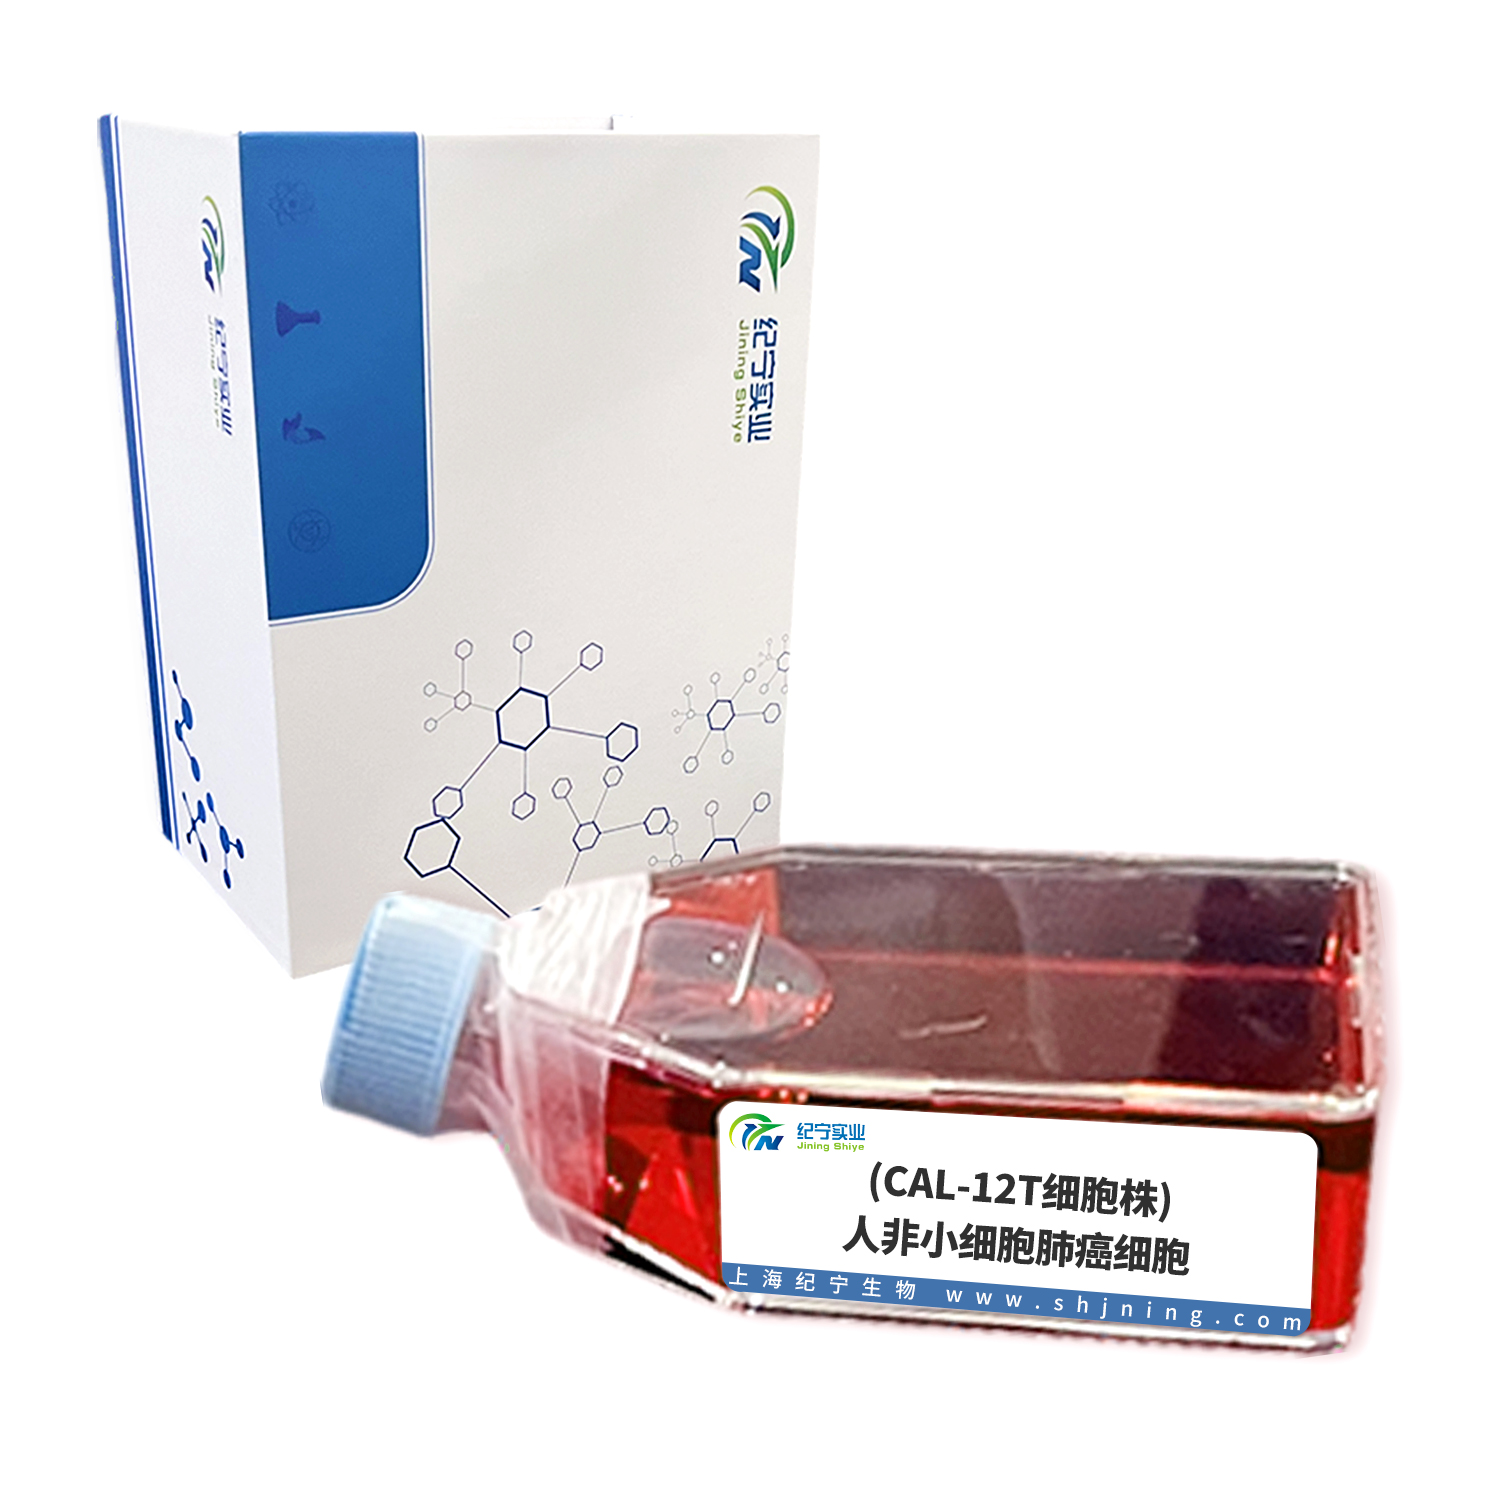 (CAL-12T细胞株)人非小细胞肺癌细胞